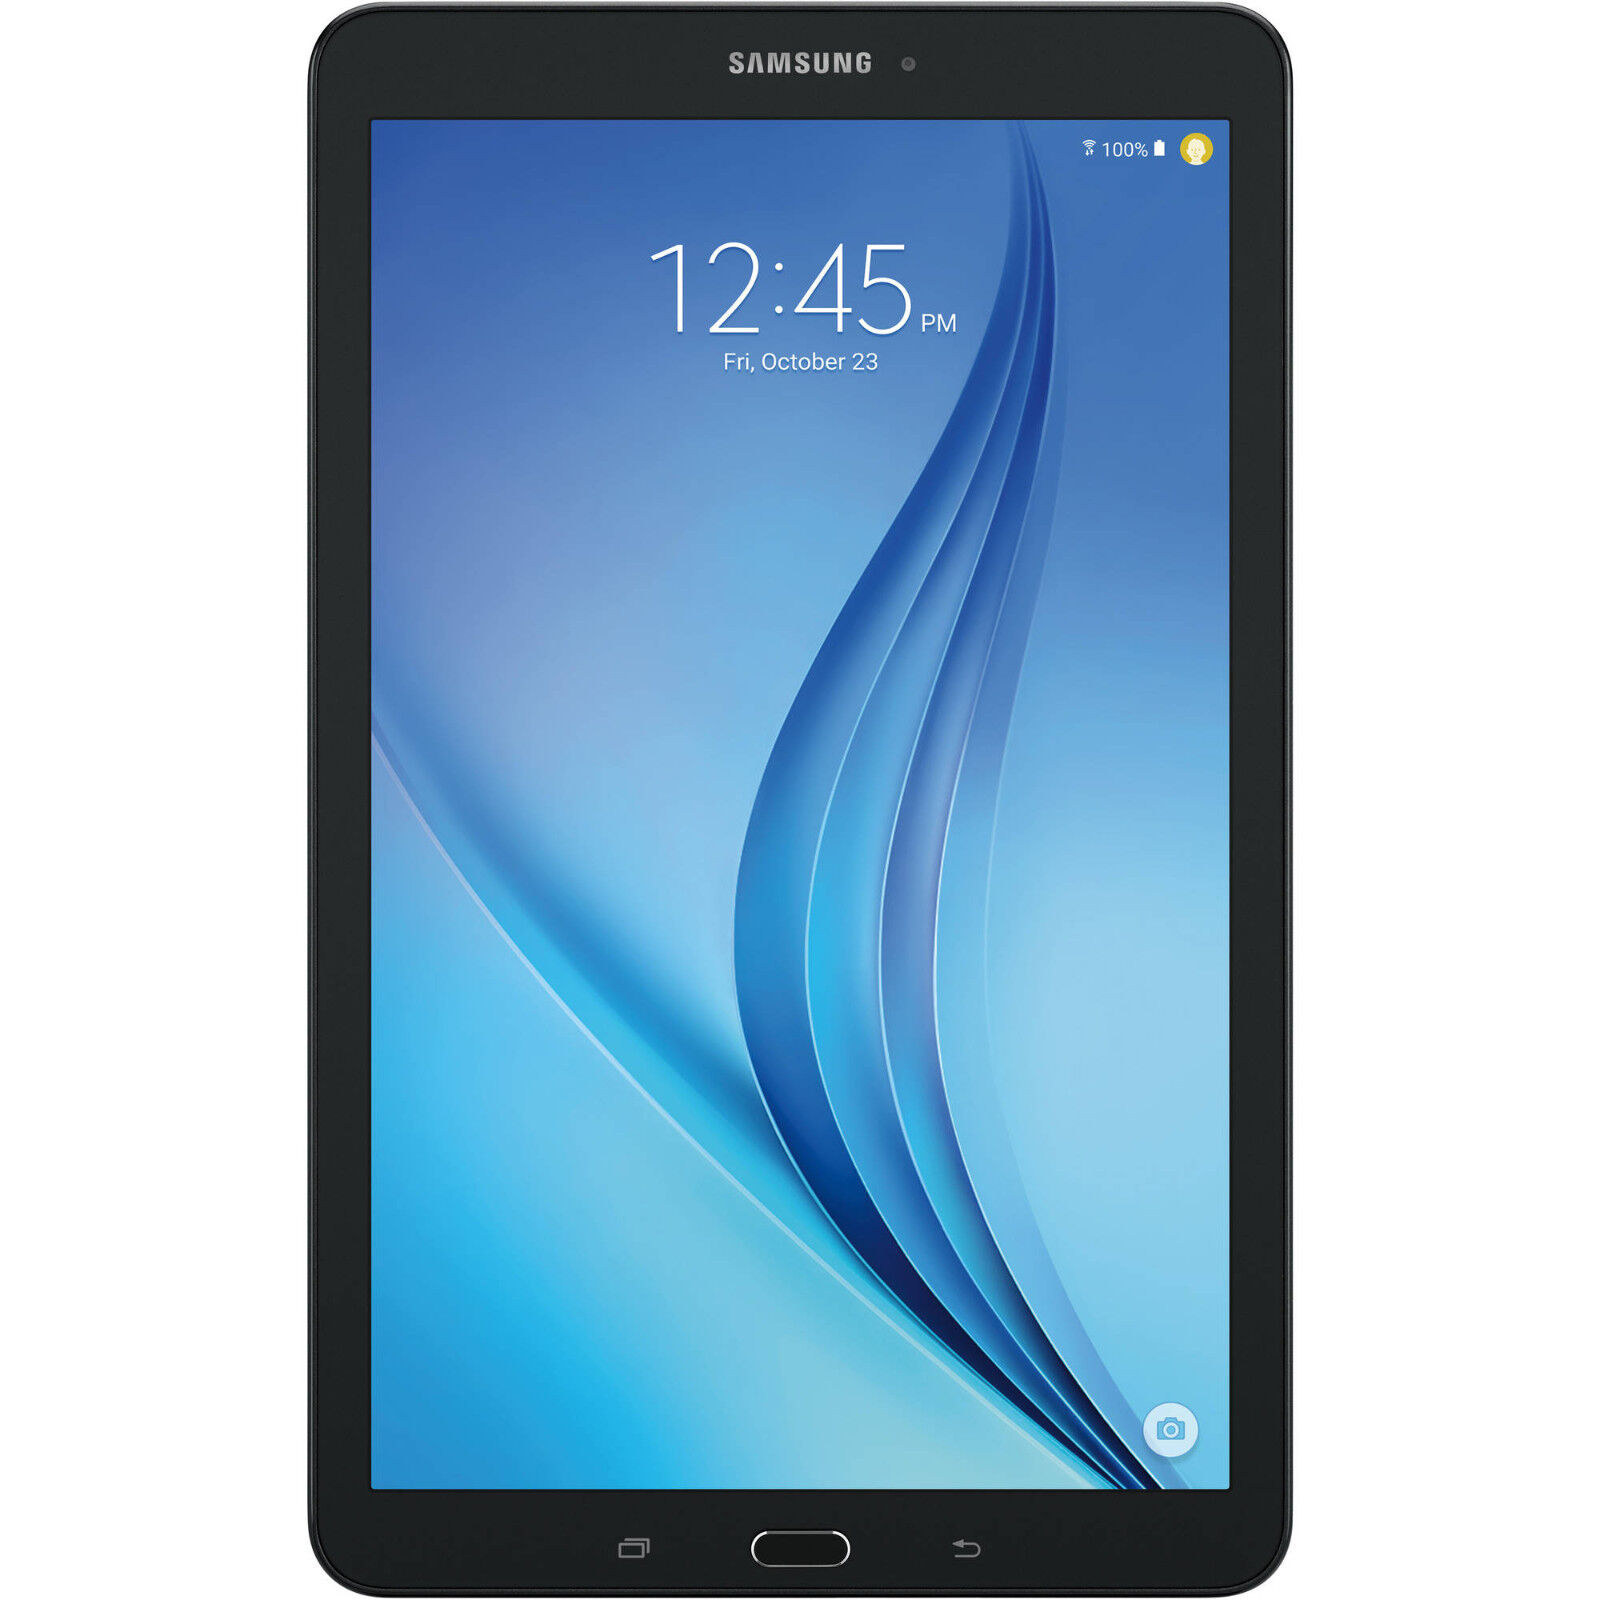 Samsung Galaxy Tab E T377A 16GB 8